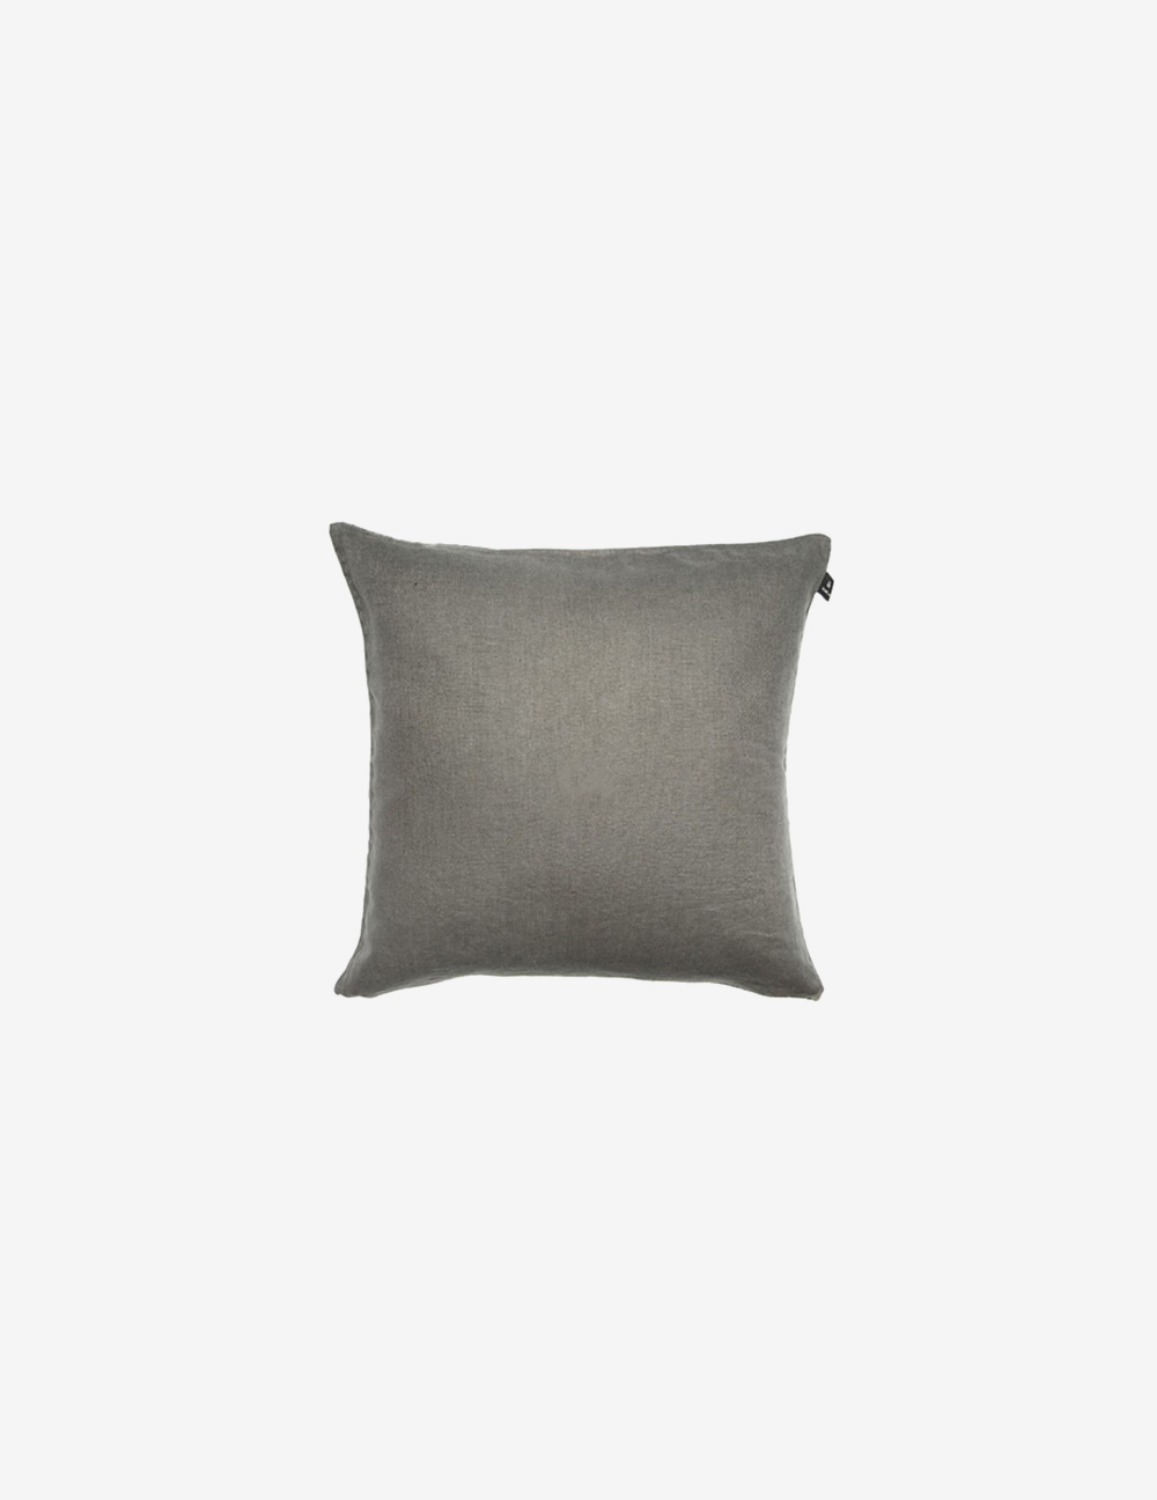 [HIMLA] Sunshine Cushion / Charcoal (50*50)